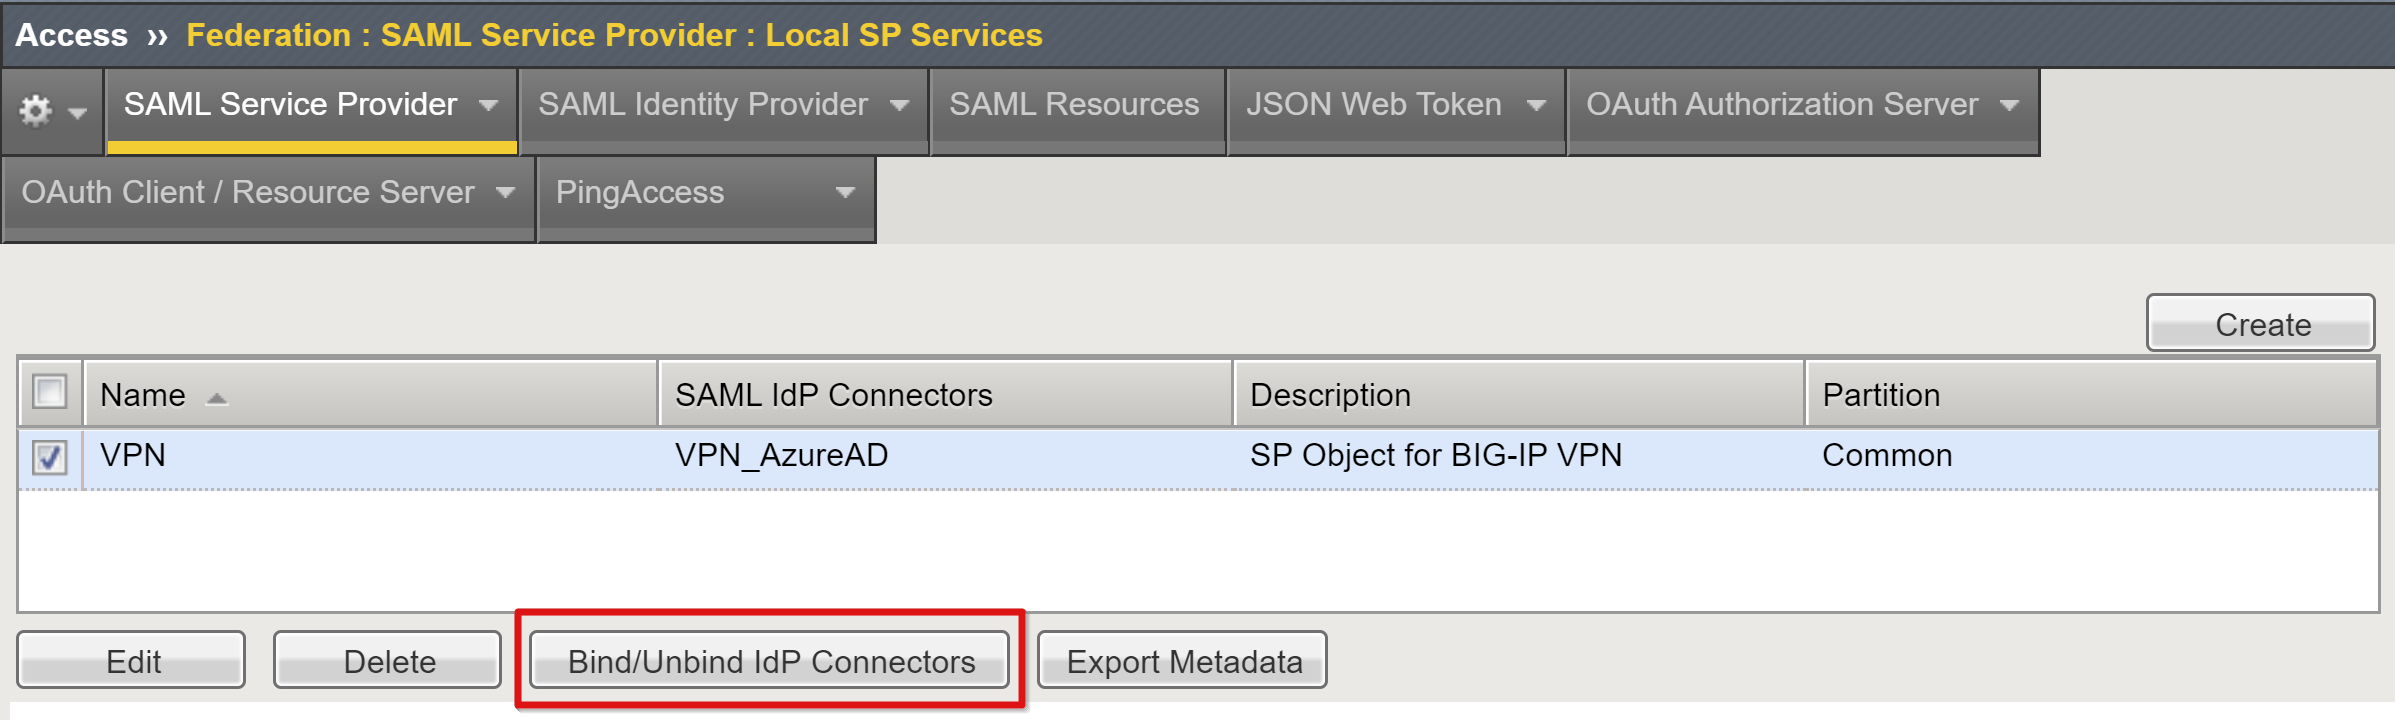 Captura de pantalla de la opción para enlazar o desenlazar conexiones de IdP en la página de servicios de SP locales.